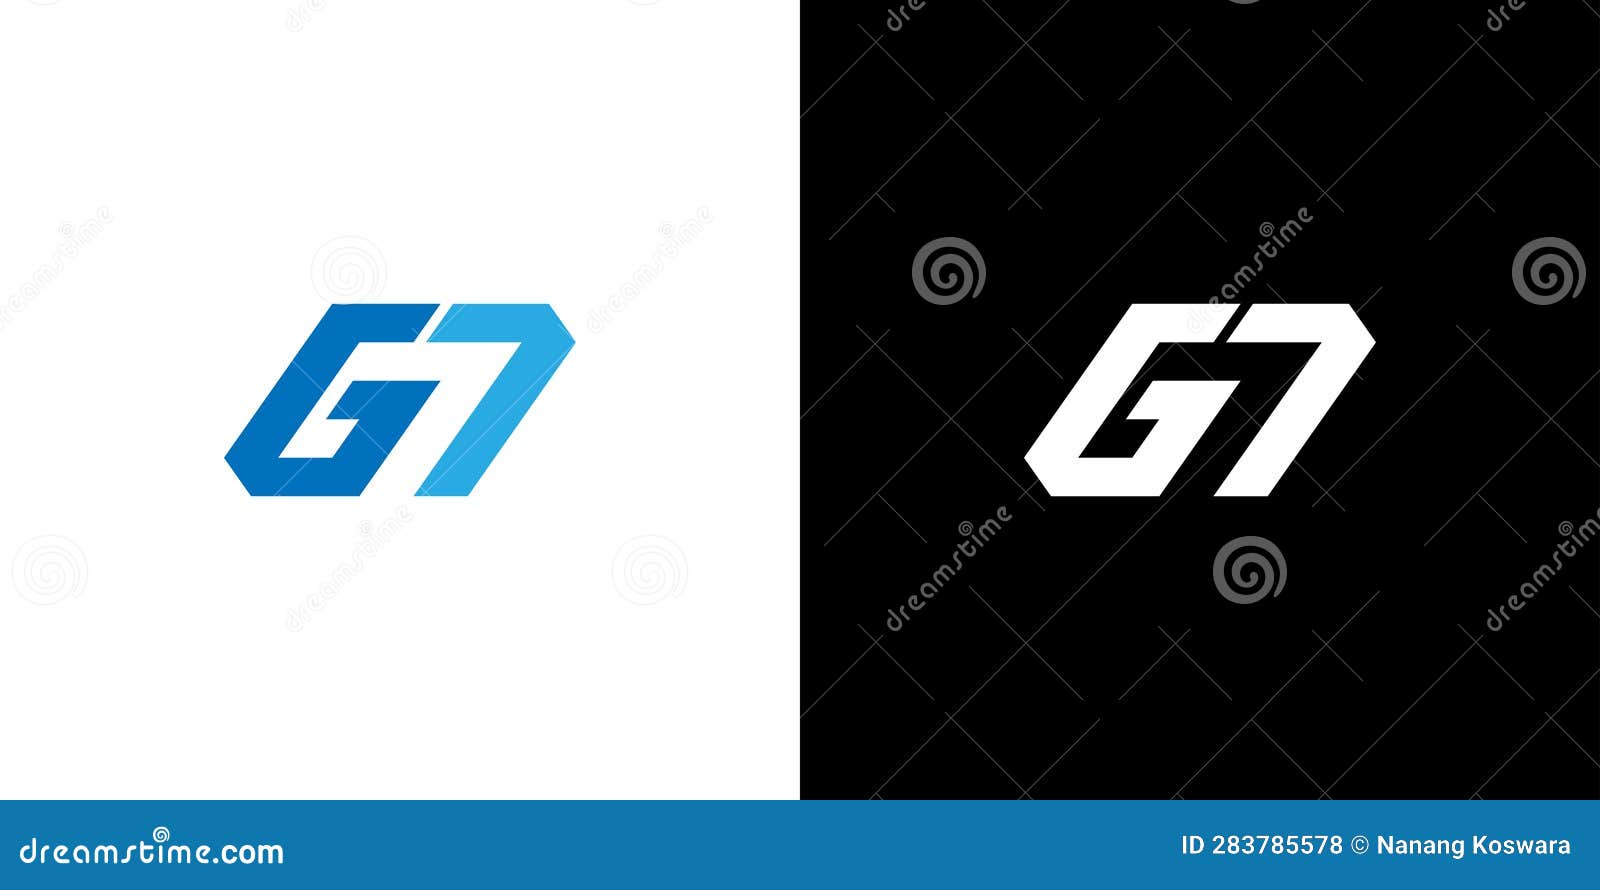 g7 letter number logo , g7 monogram, initial g7 logo, g7 logo, icon, 